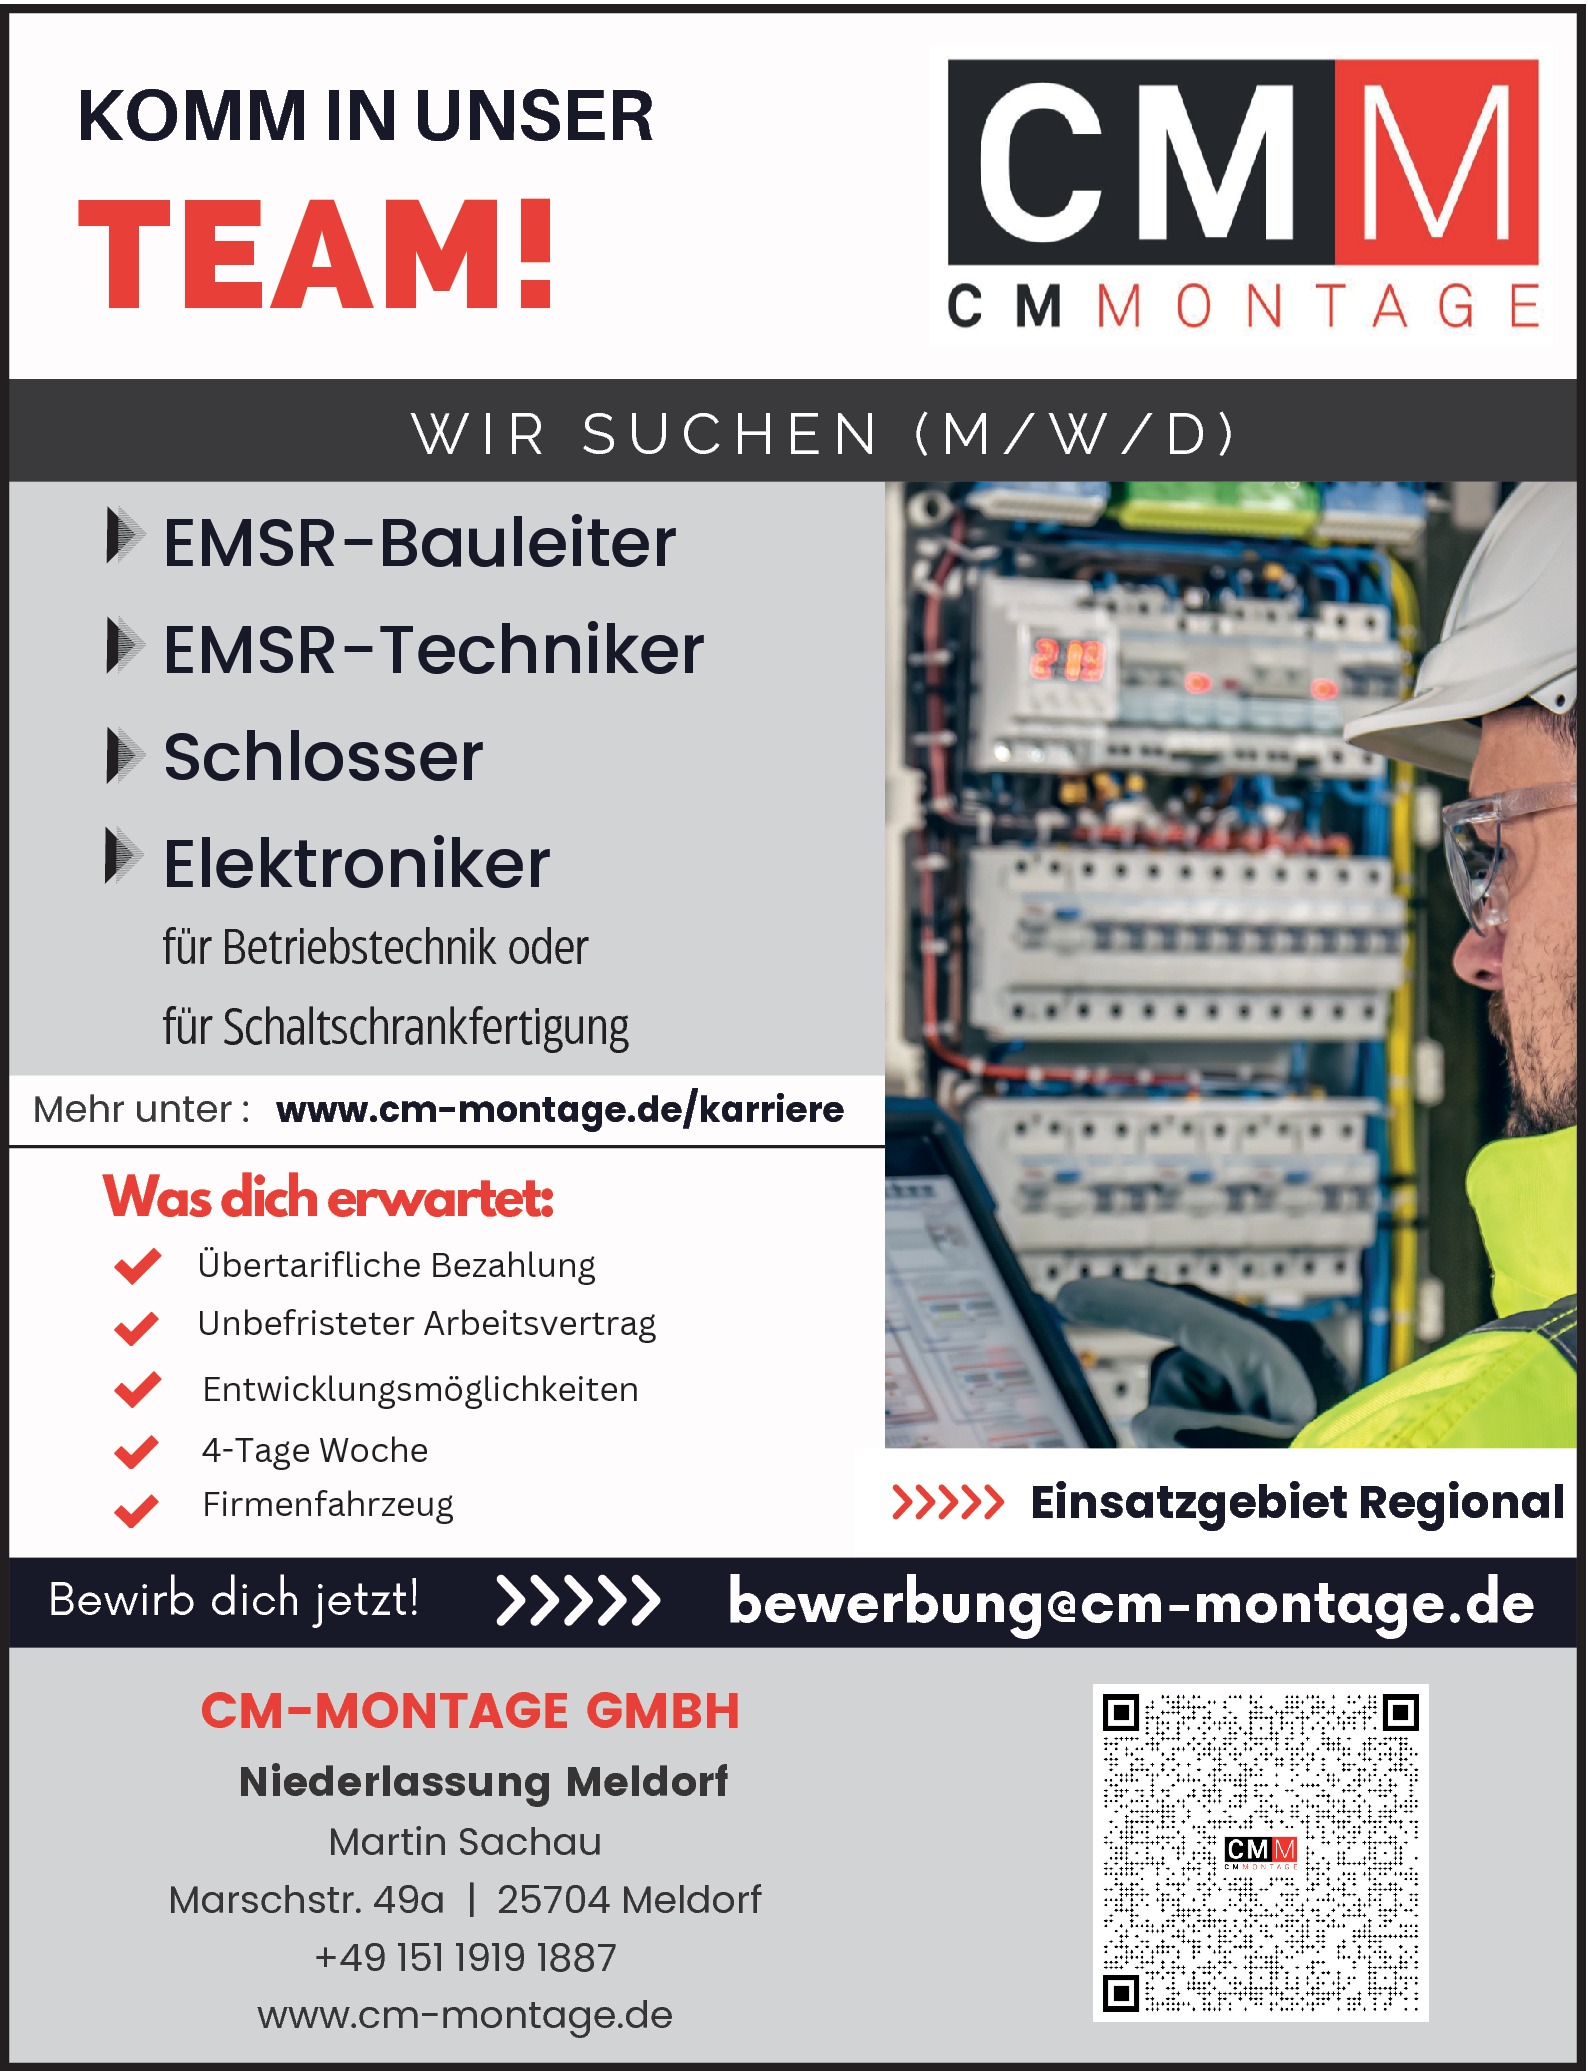  EMSR-Bauleiter m/w/d